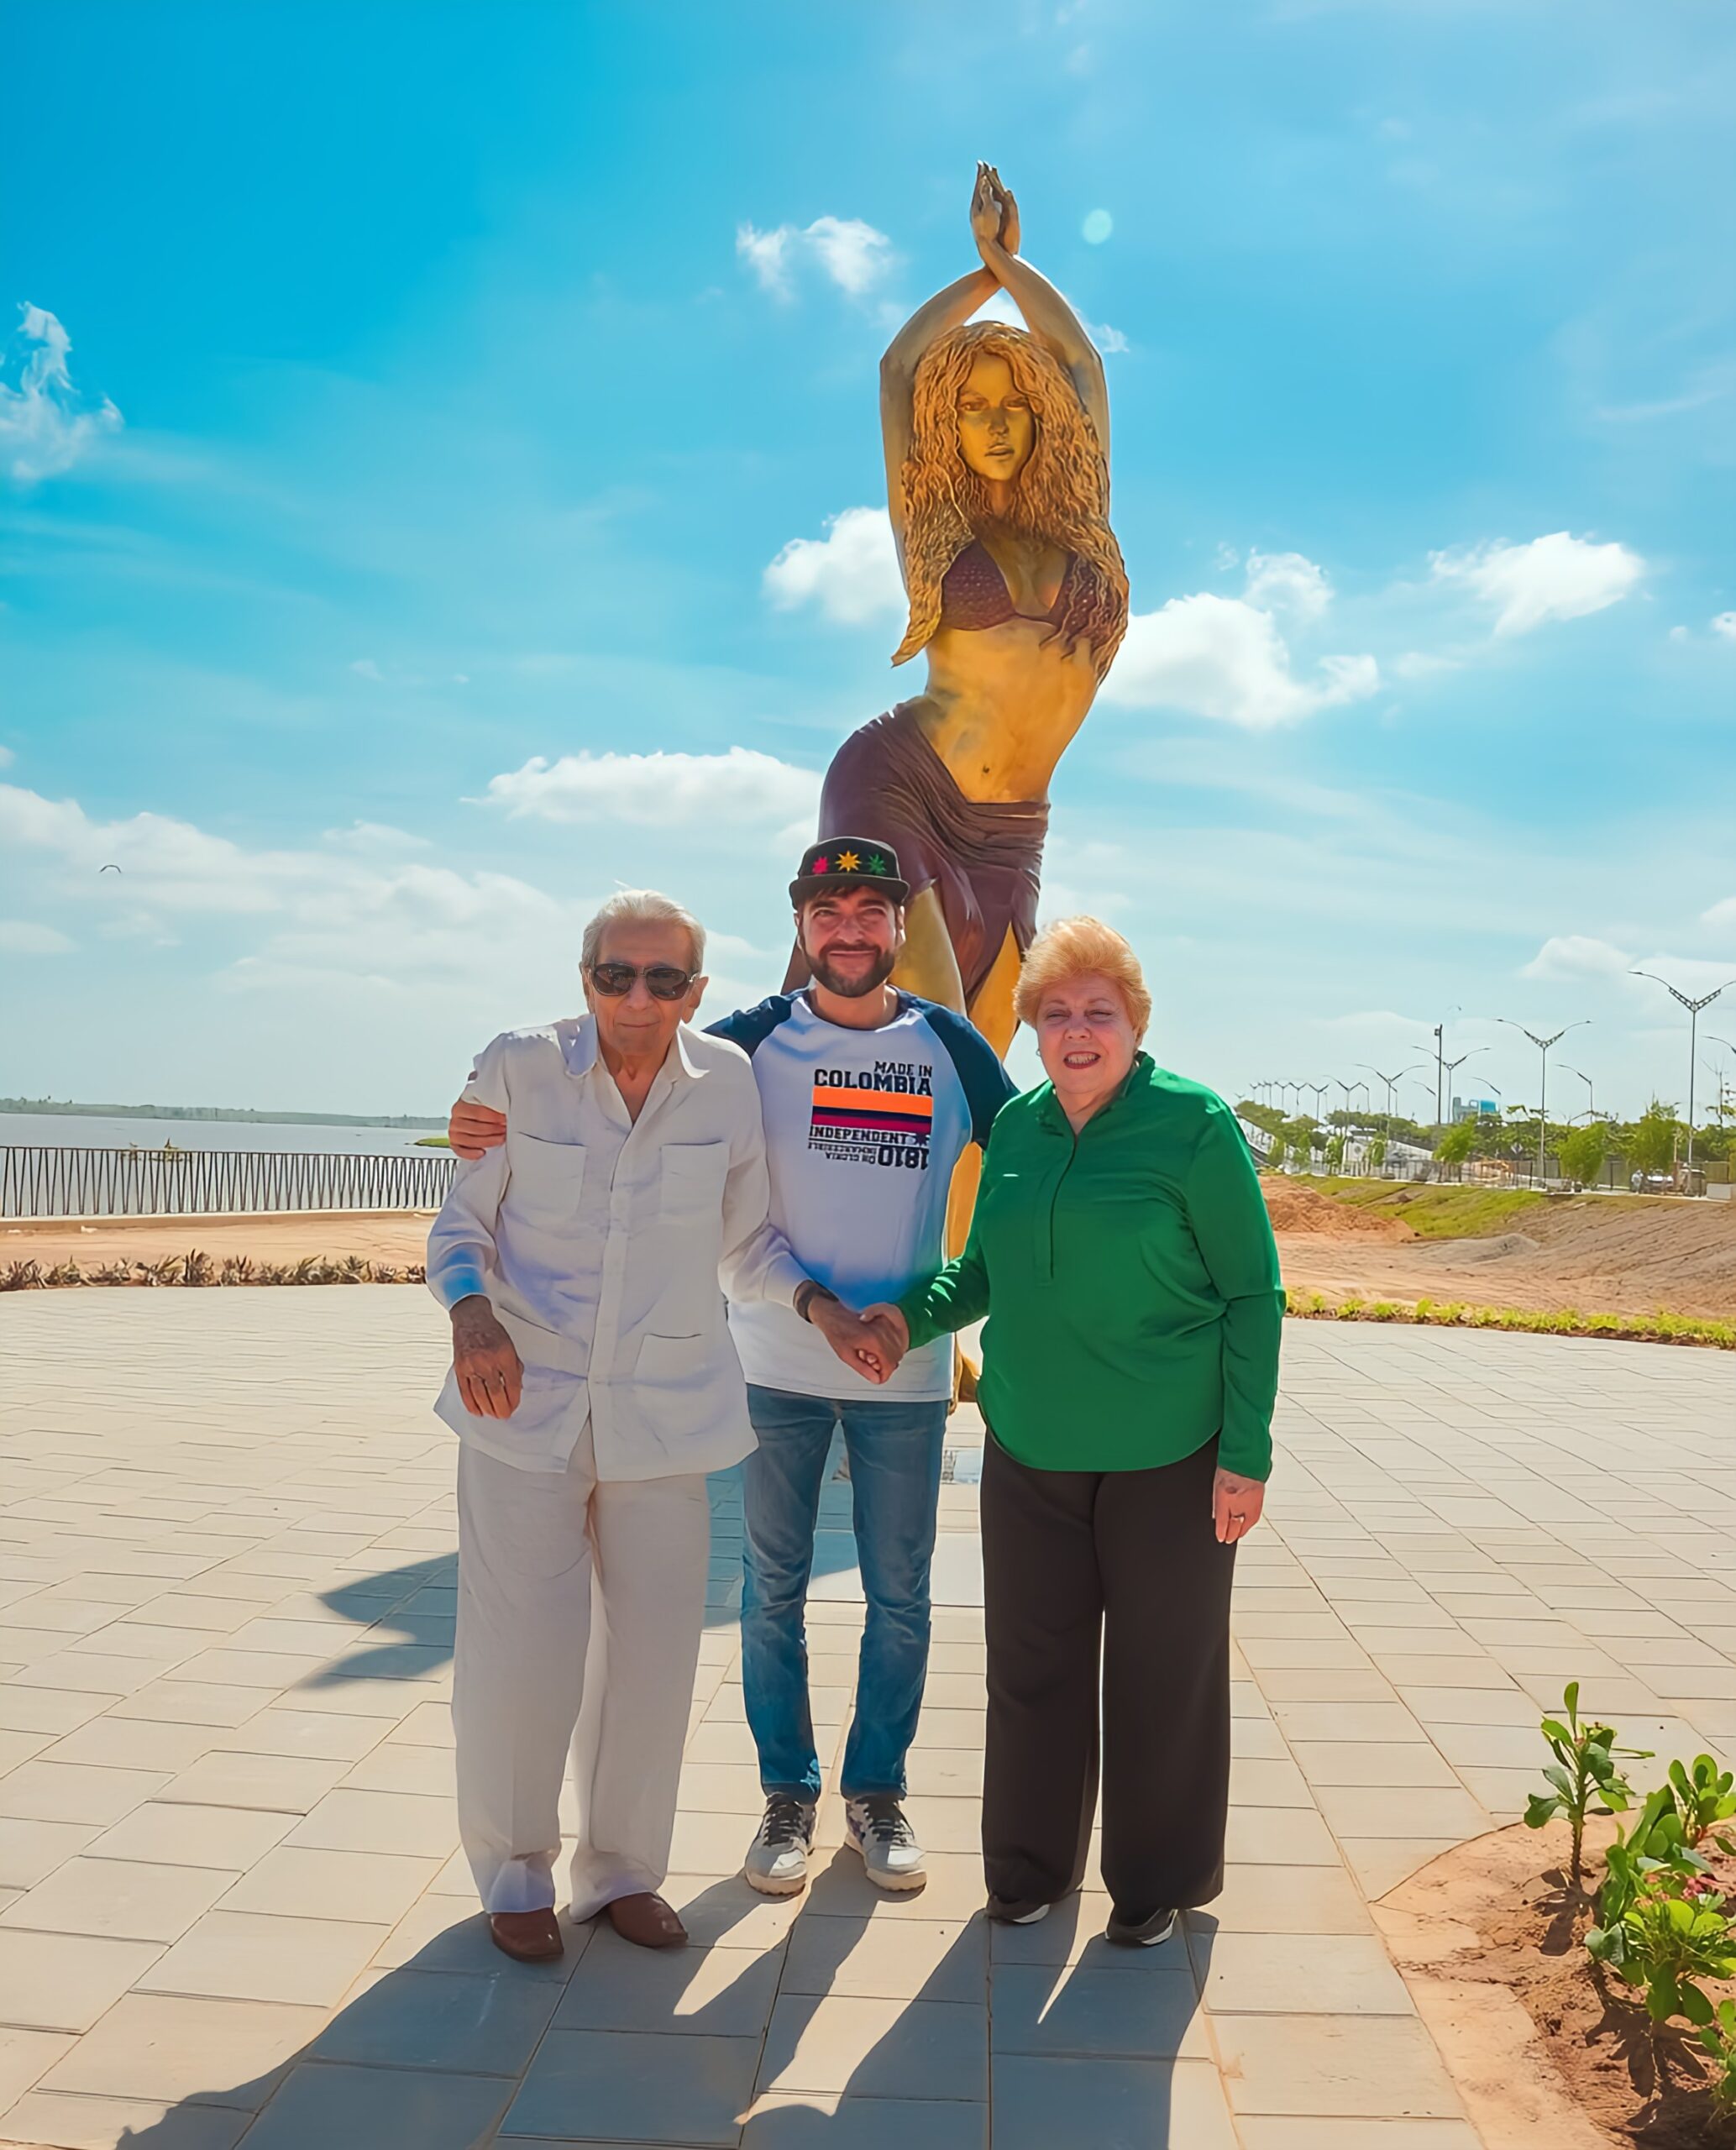 Une statue de 6,5 mètres à l'effigie de Shakira a été inaugurée dans sa ville natale de Barranquilla, en Colombie. - shakira 2 image enhancer scaled